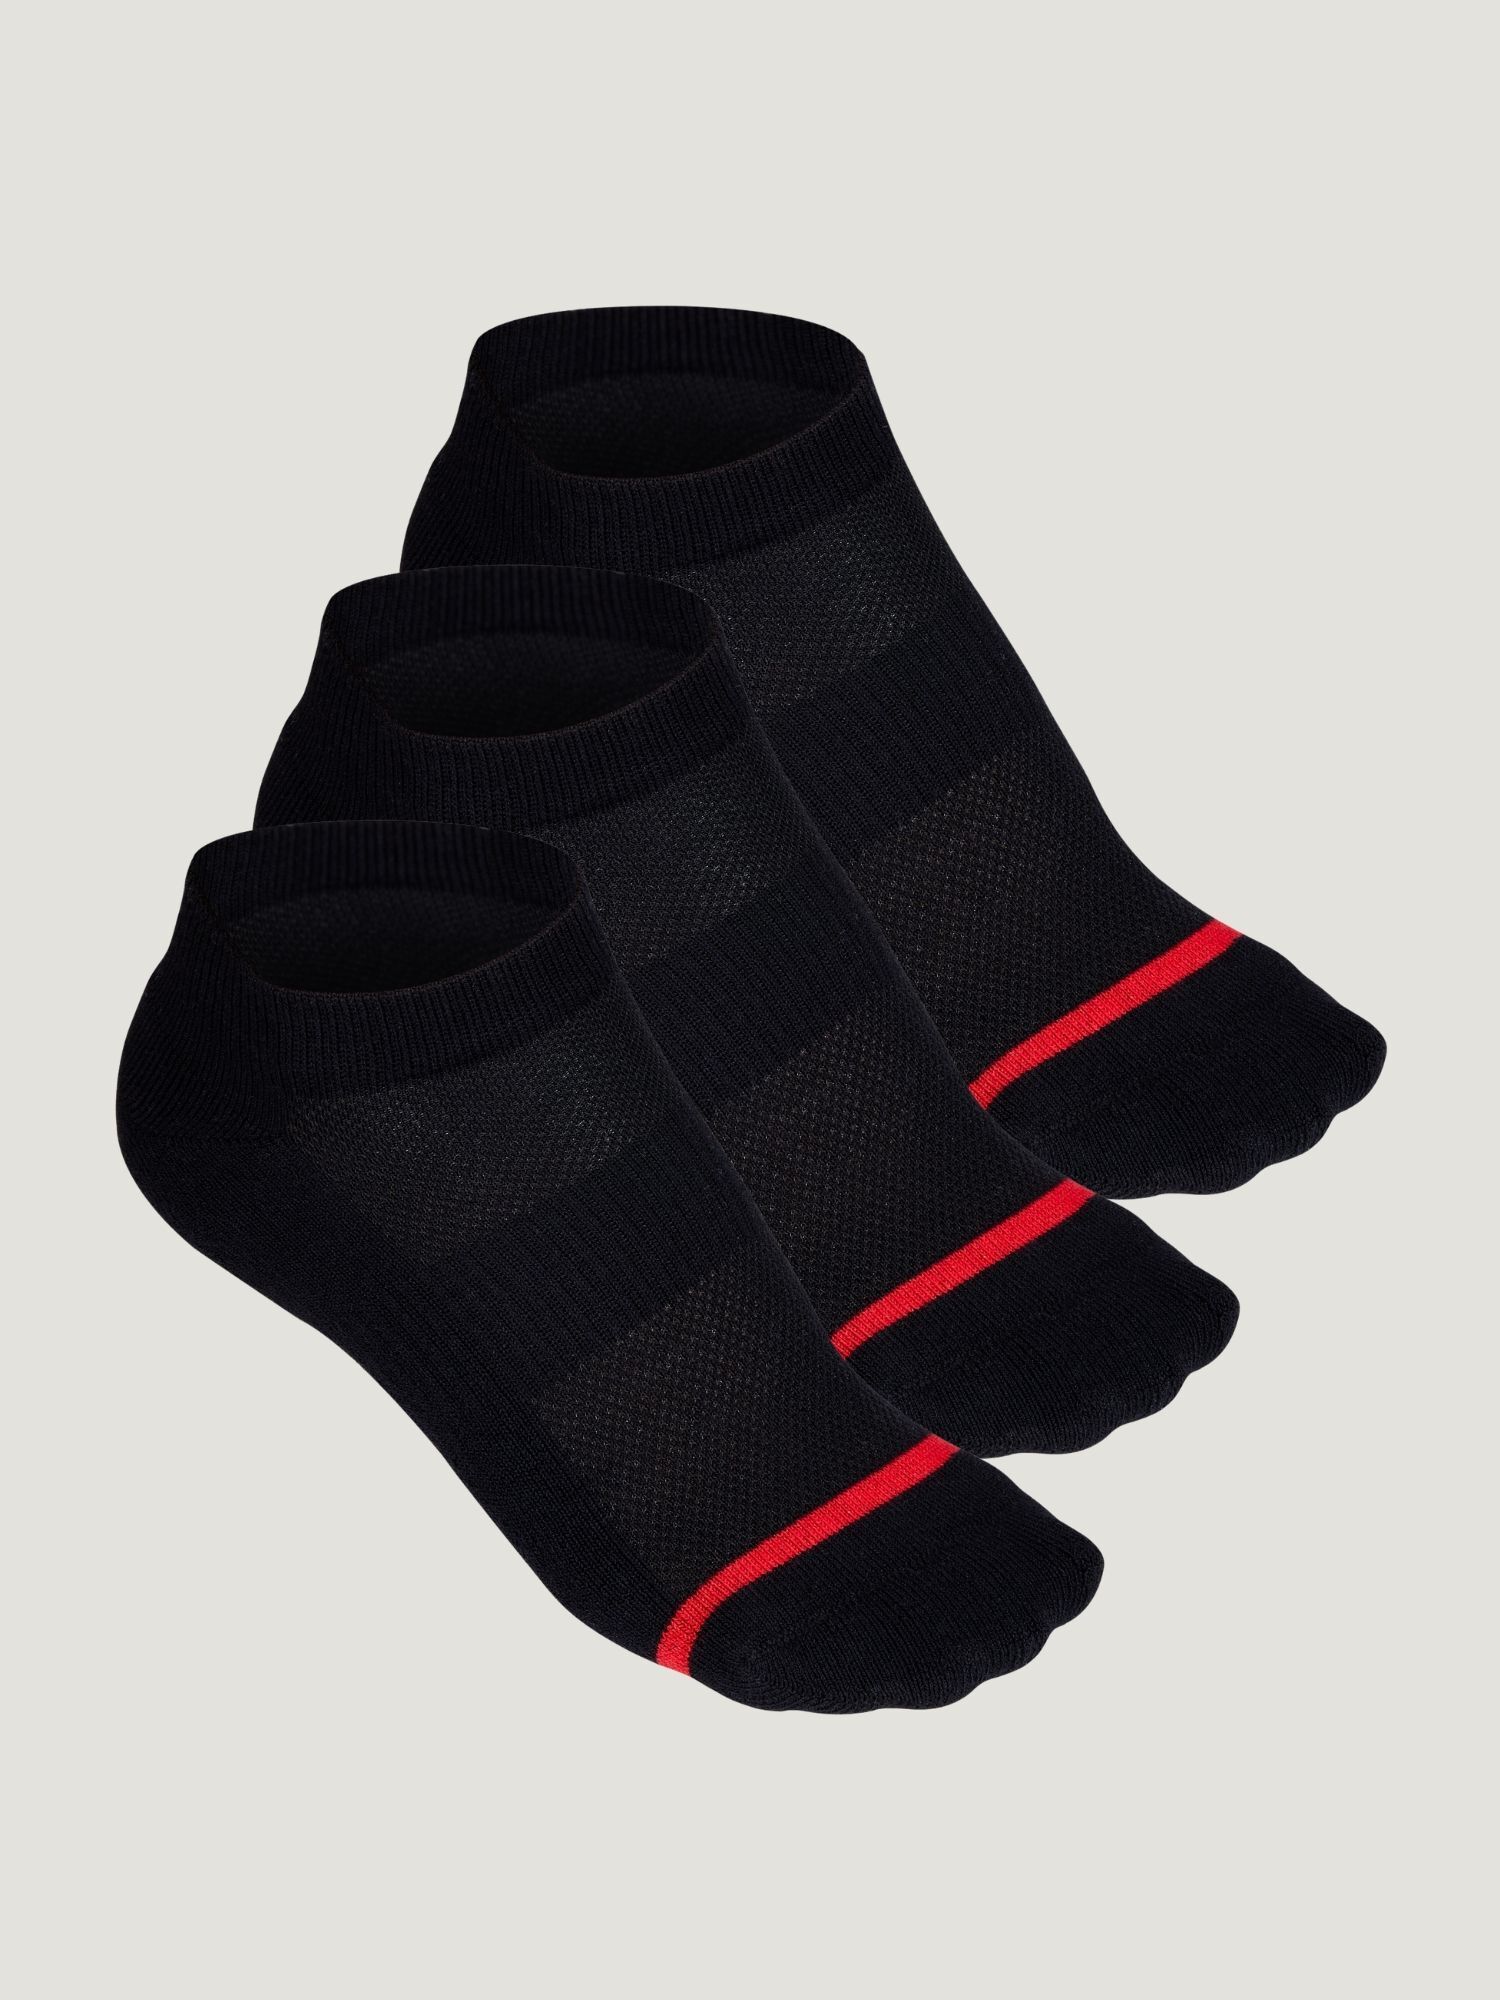 All Black Ankle Socks 3-Pack | Fresh Clean Tees